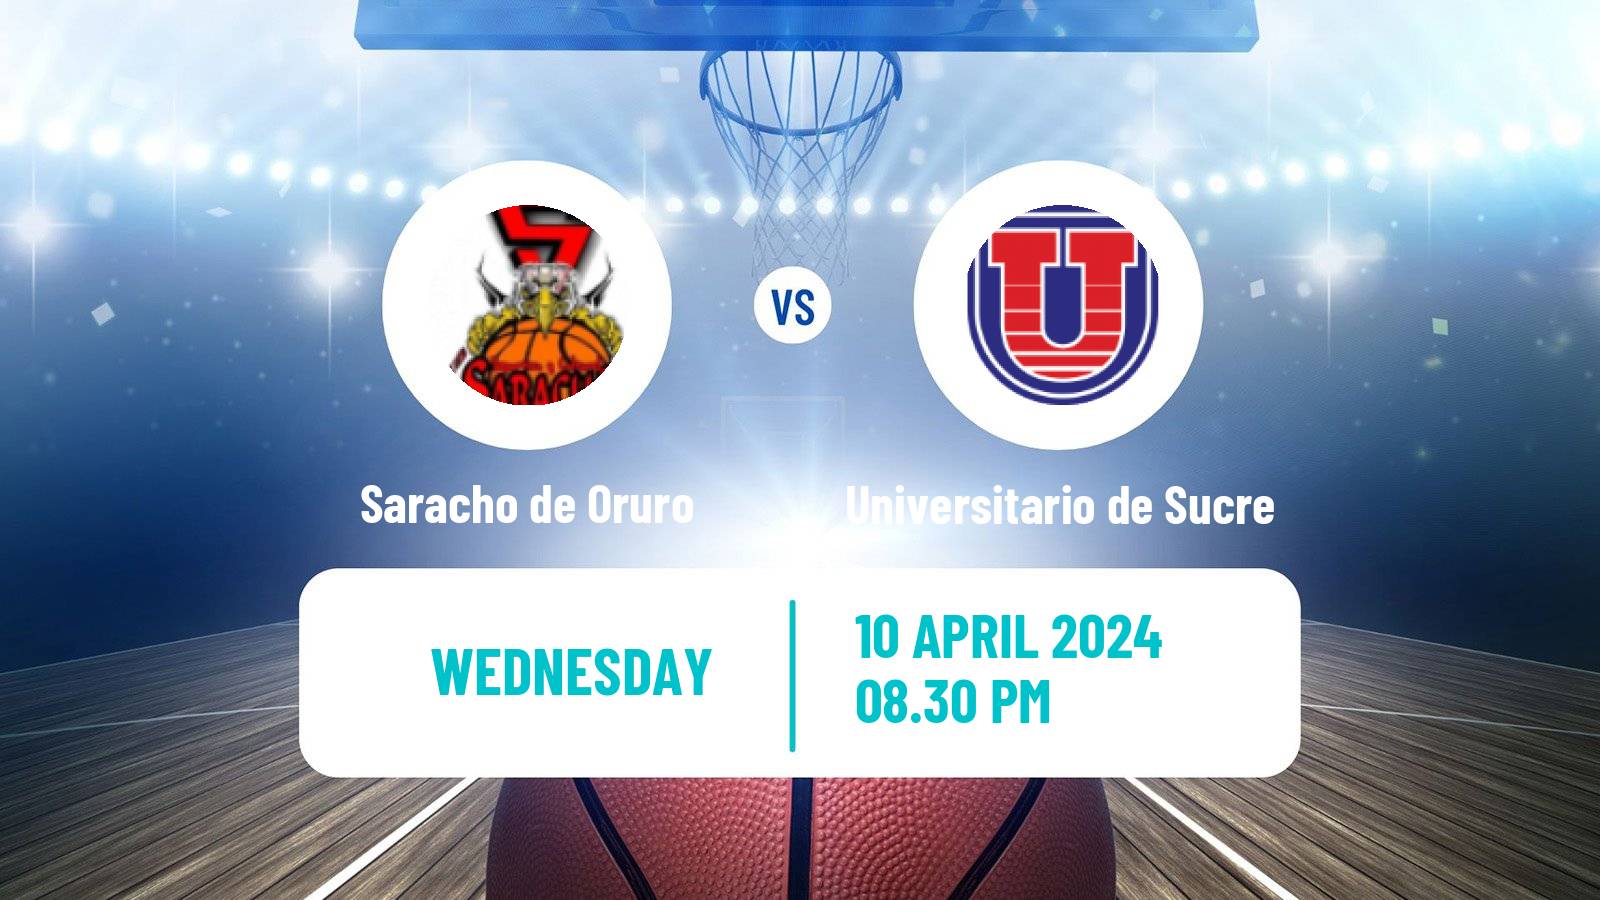 Basketball Bolivian Libobasquet Saracho de Oruro - Universitario de Sucre